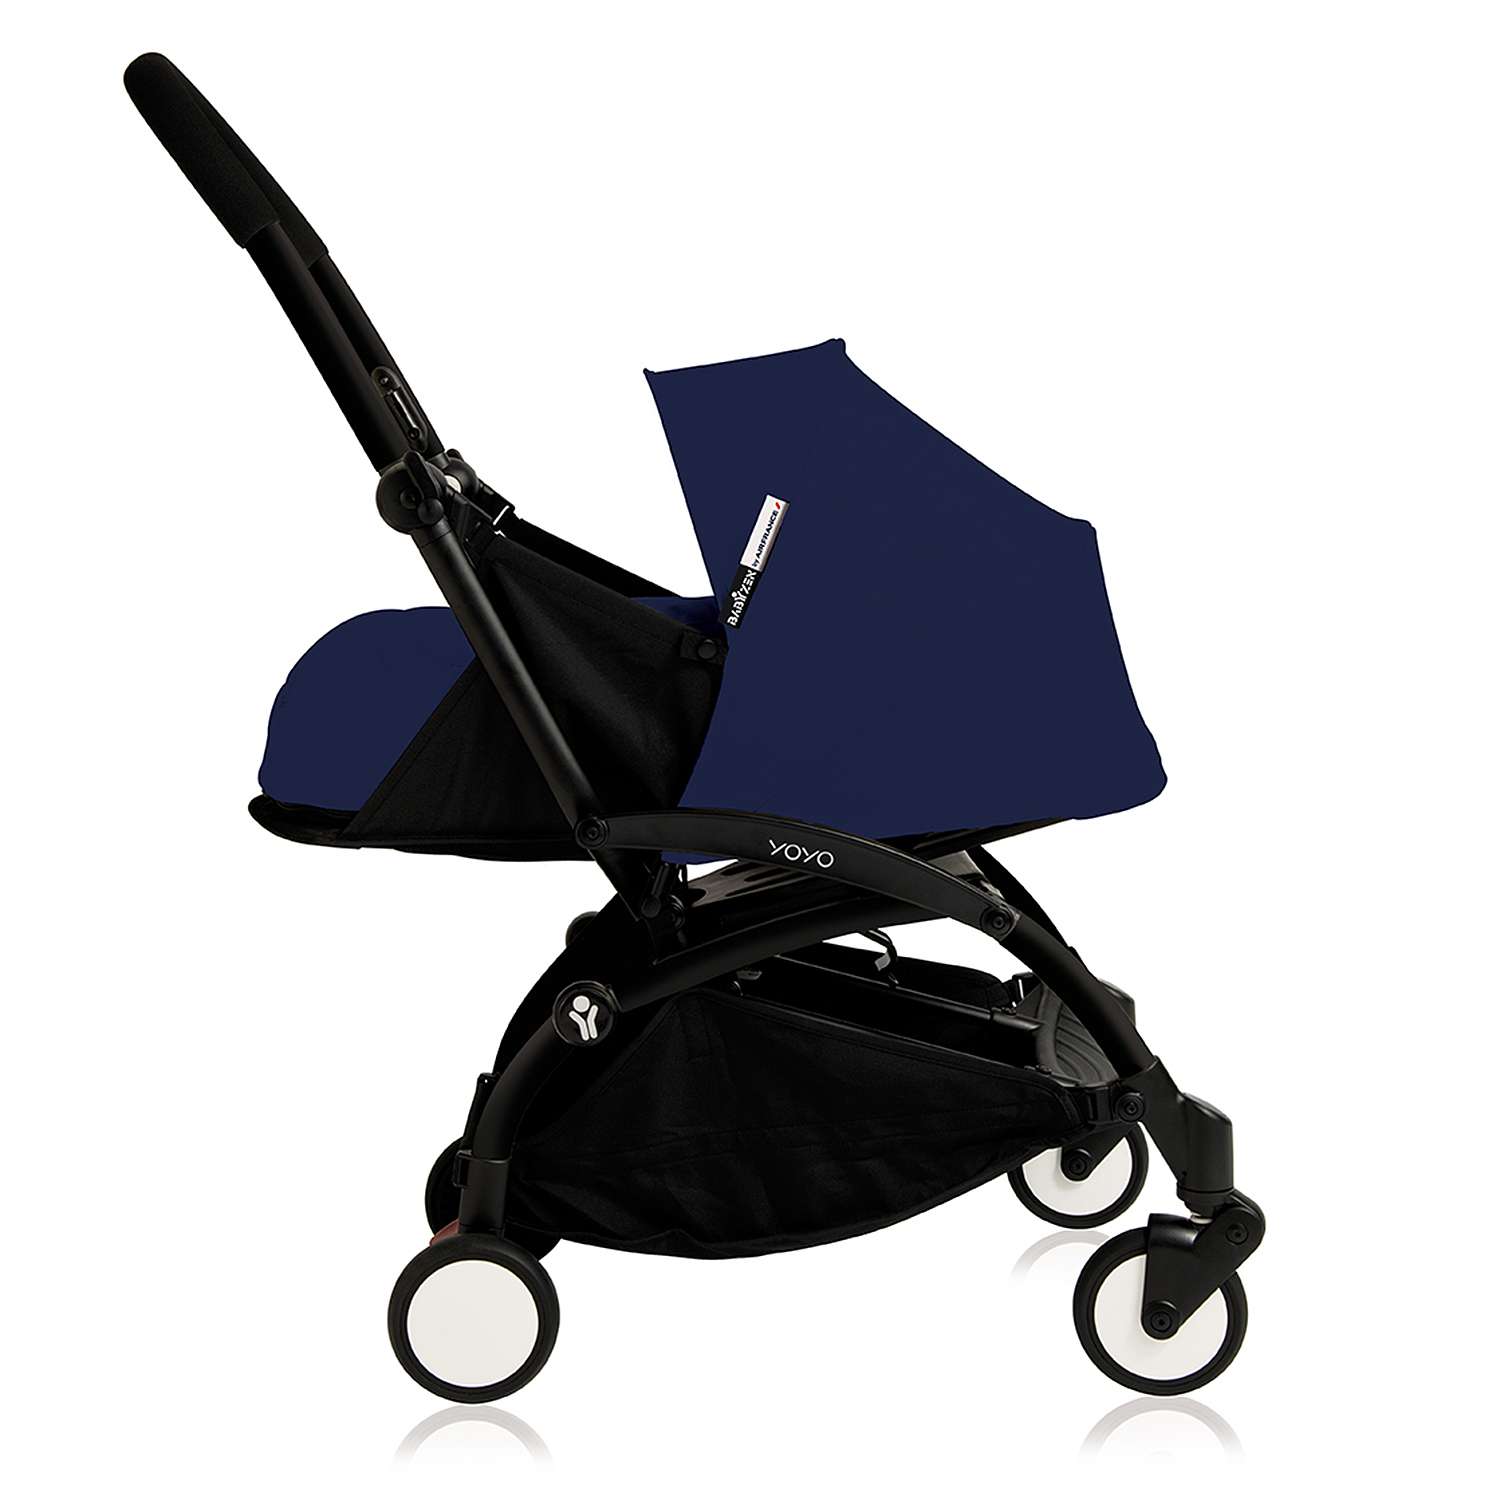 Комплект люльки для новорожденного к коляске Babyzen Yoyo Plus Темно-синий BZ10107-11 - фото 4